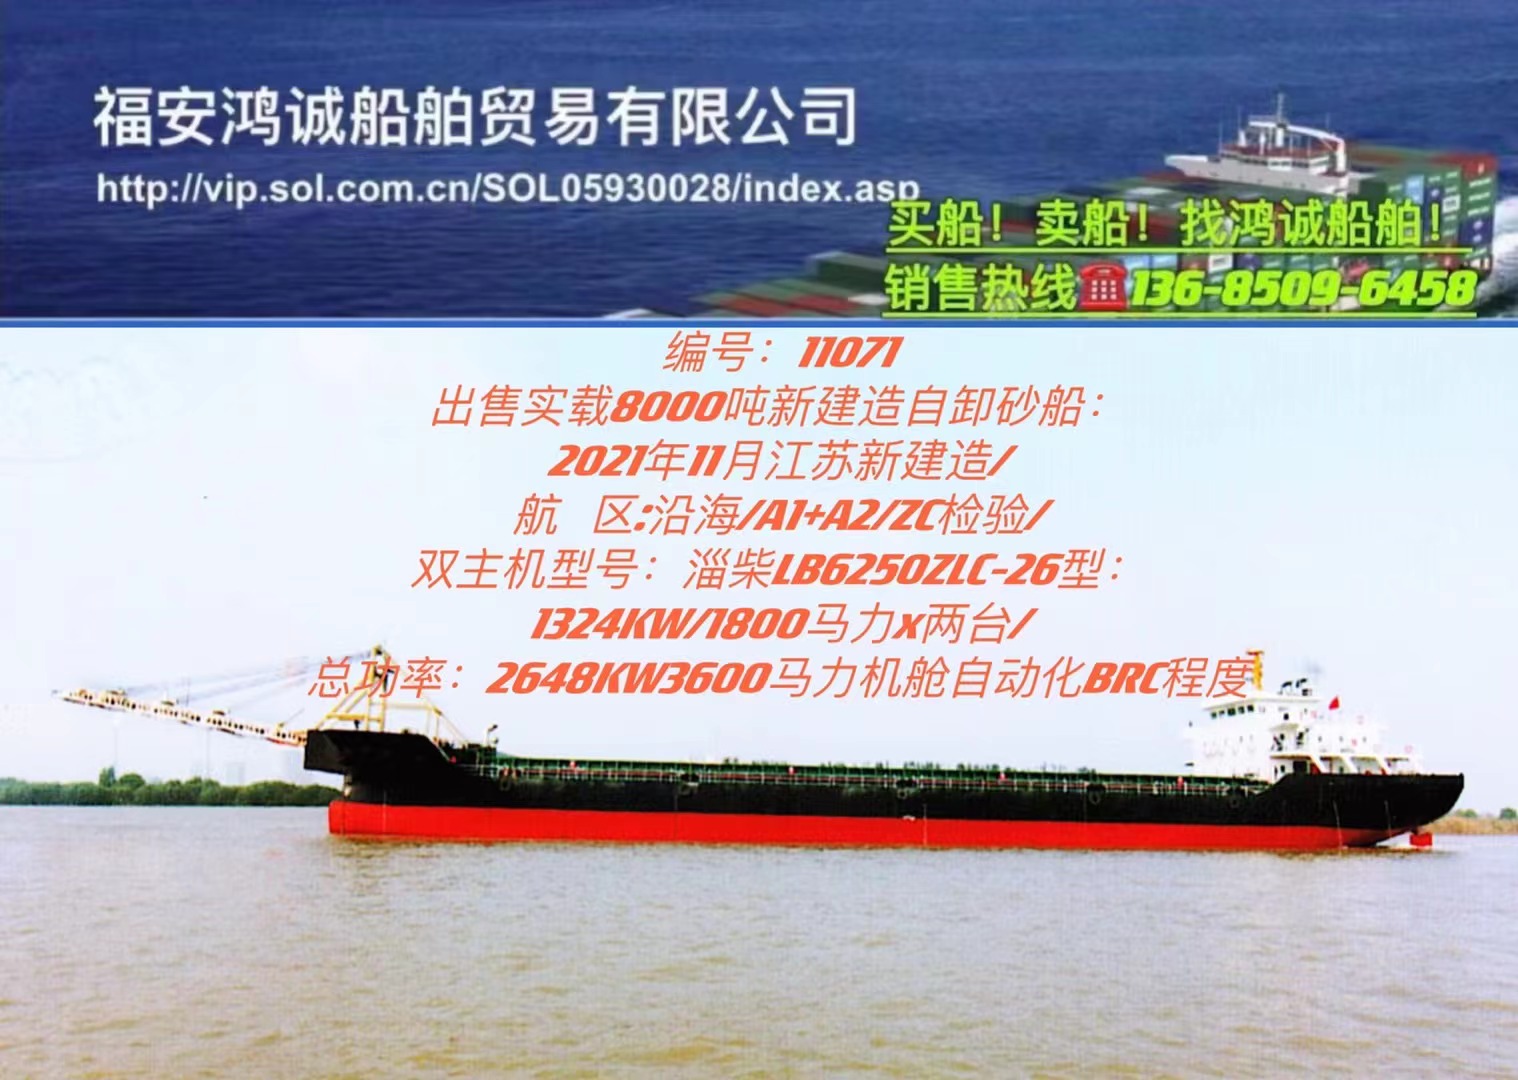 出售实载8000吨新建造自卸砂船： 2021年11月江苏新建造/